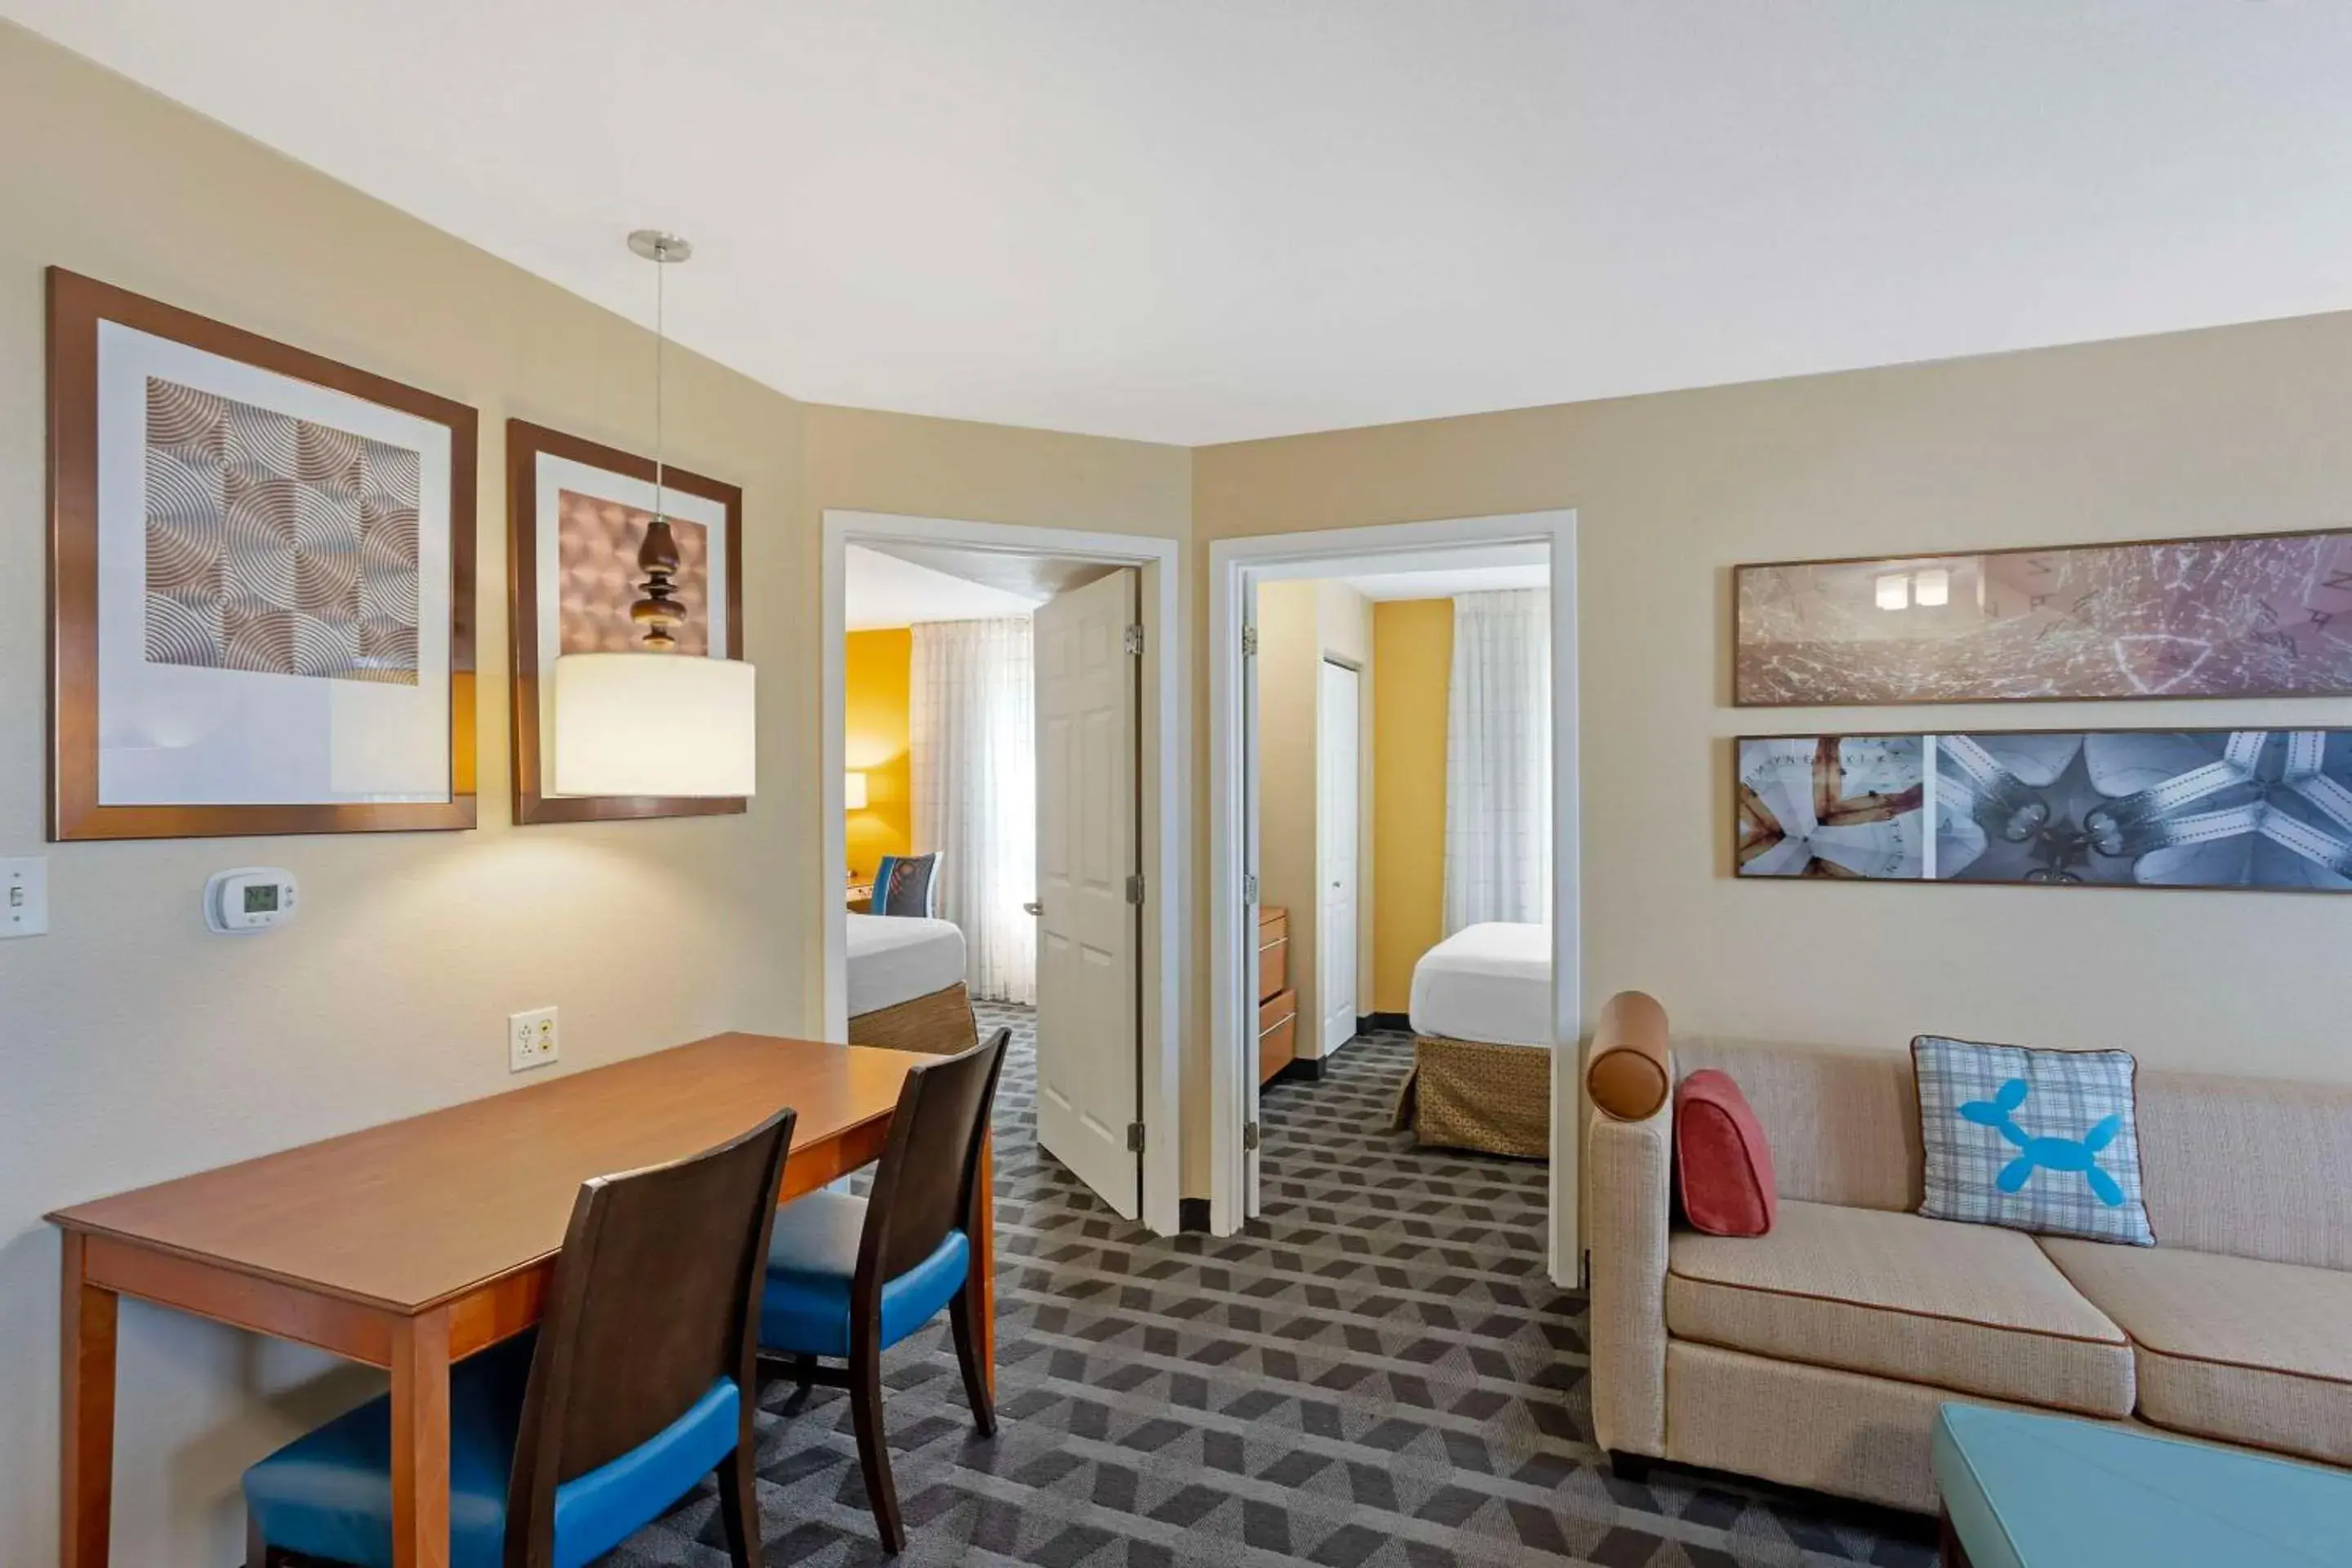 Bedroom in MainStay Suites Mt Laurel - Philadelphia